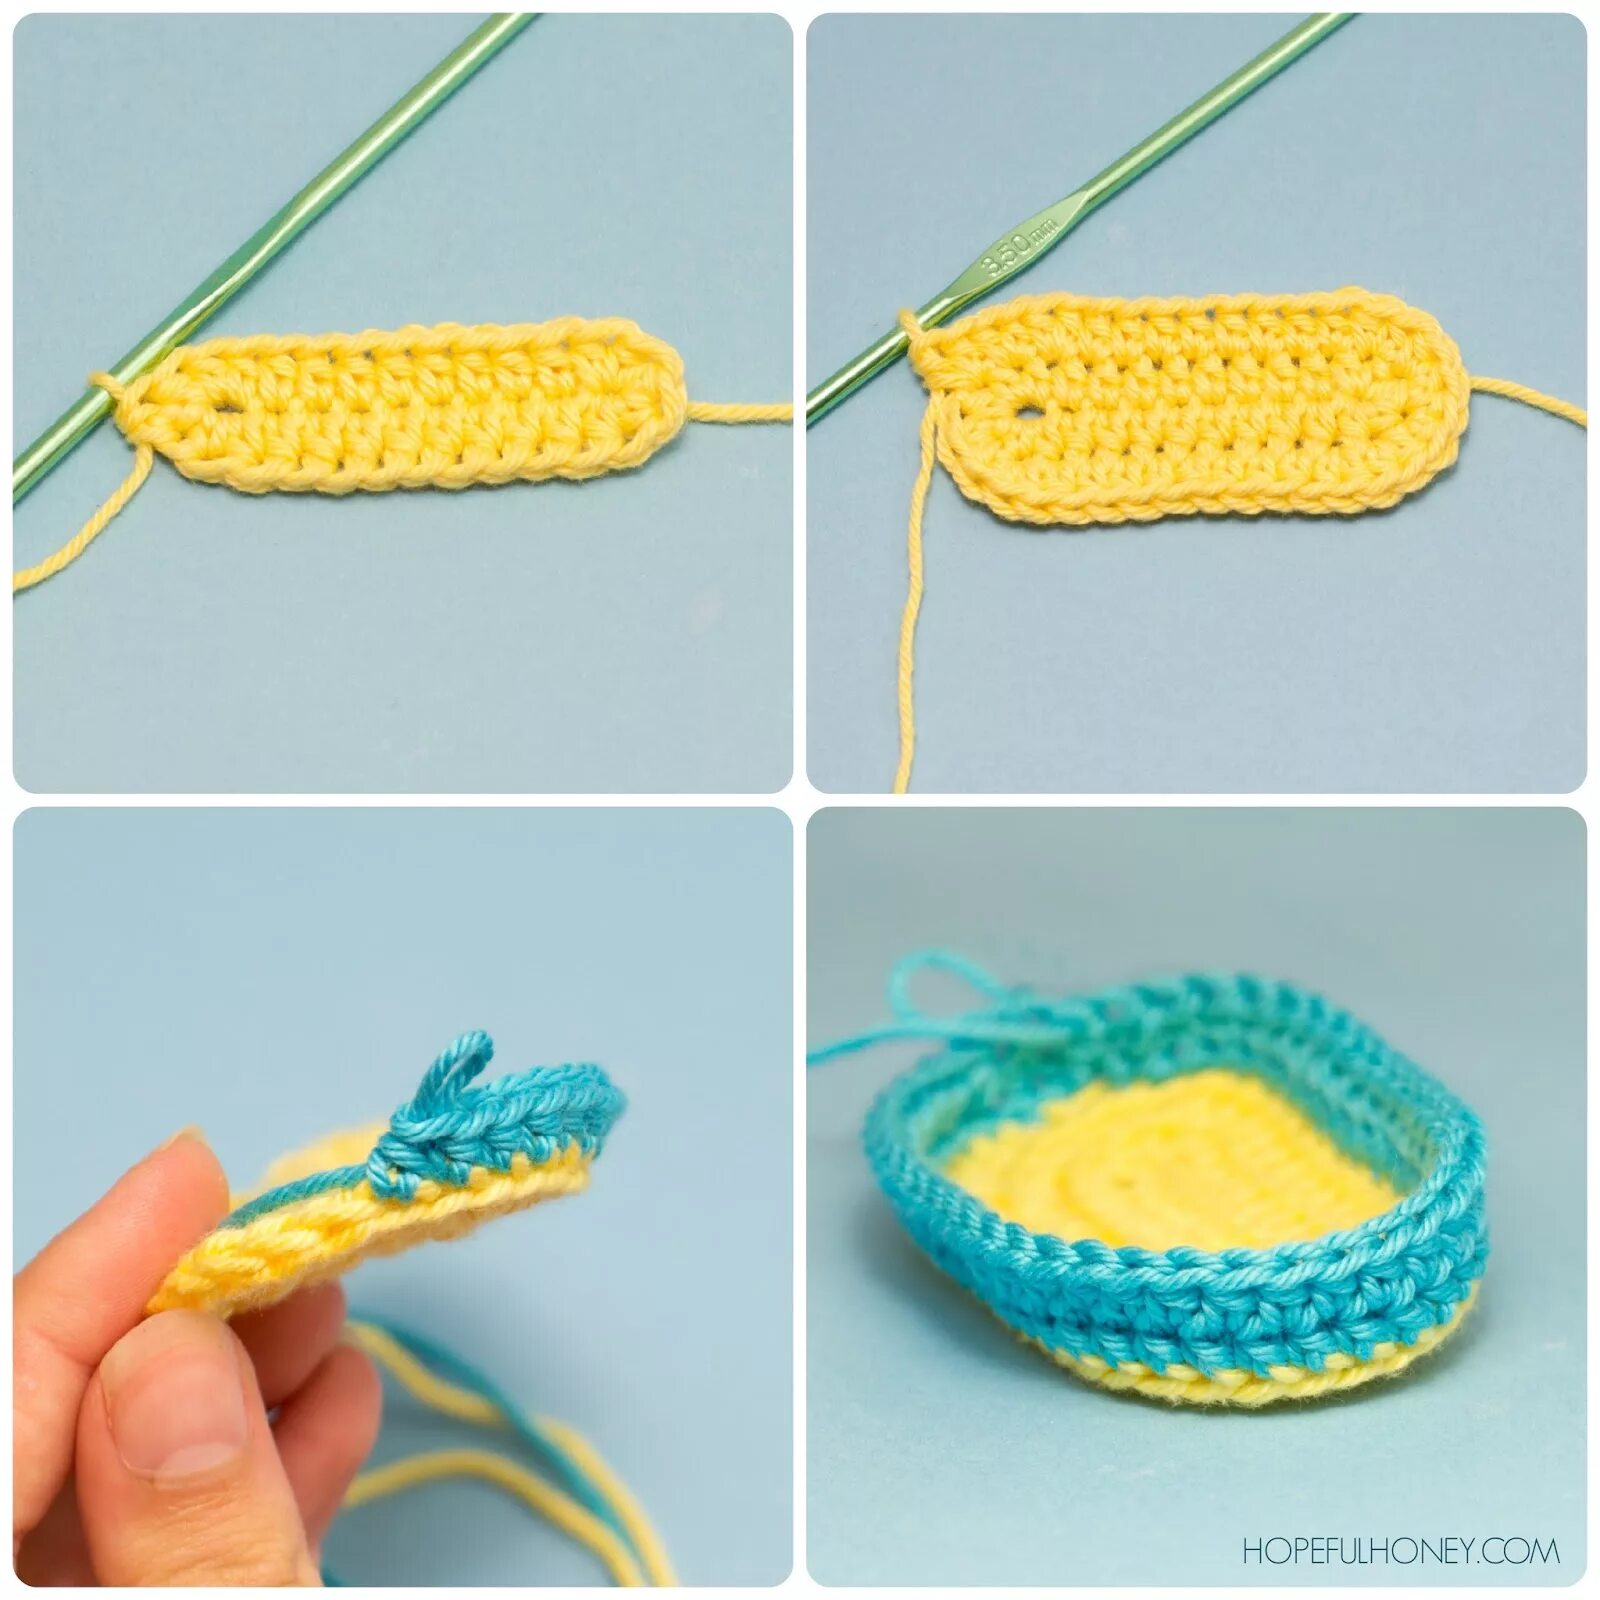 Самое легкое вязание крючком. Поделки крючком для начинающих. Вязание крючком для начинающих самые простые изделия. Крючком для начинающих детям. Связать что то легкое